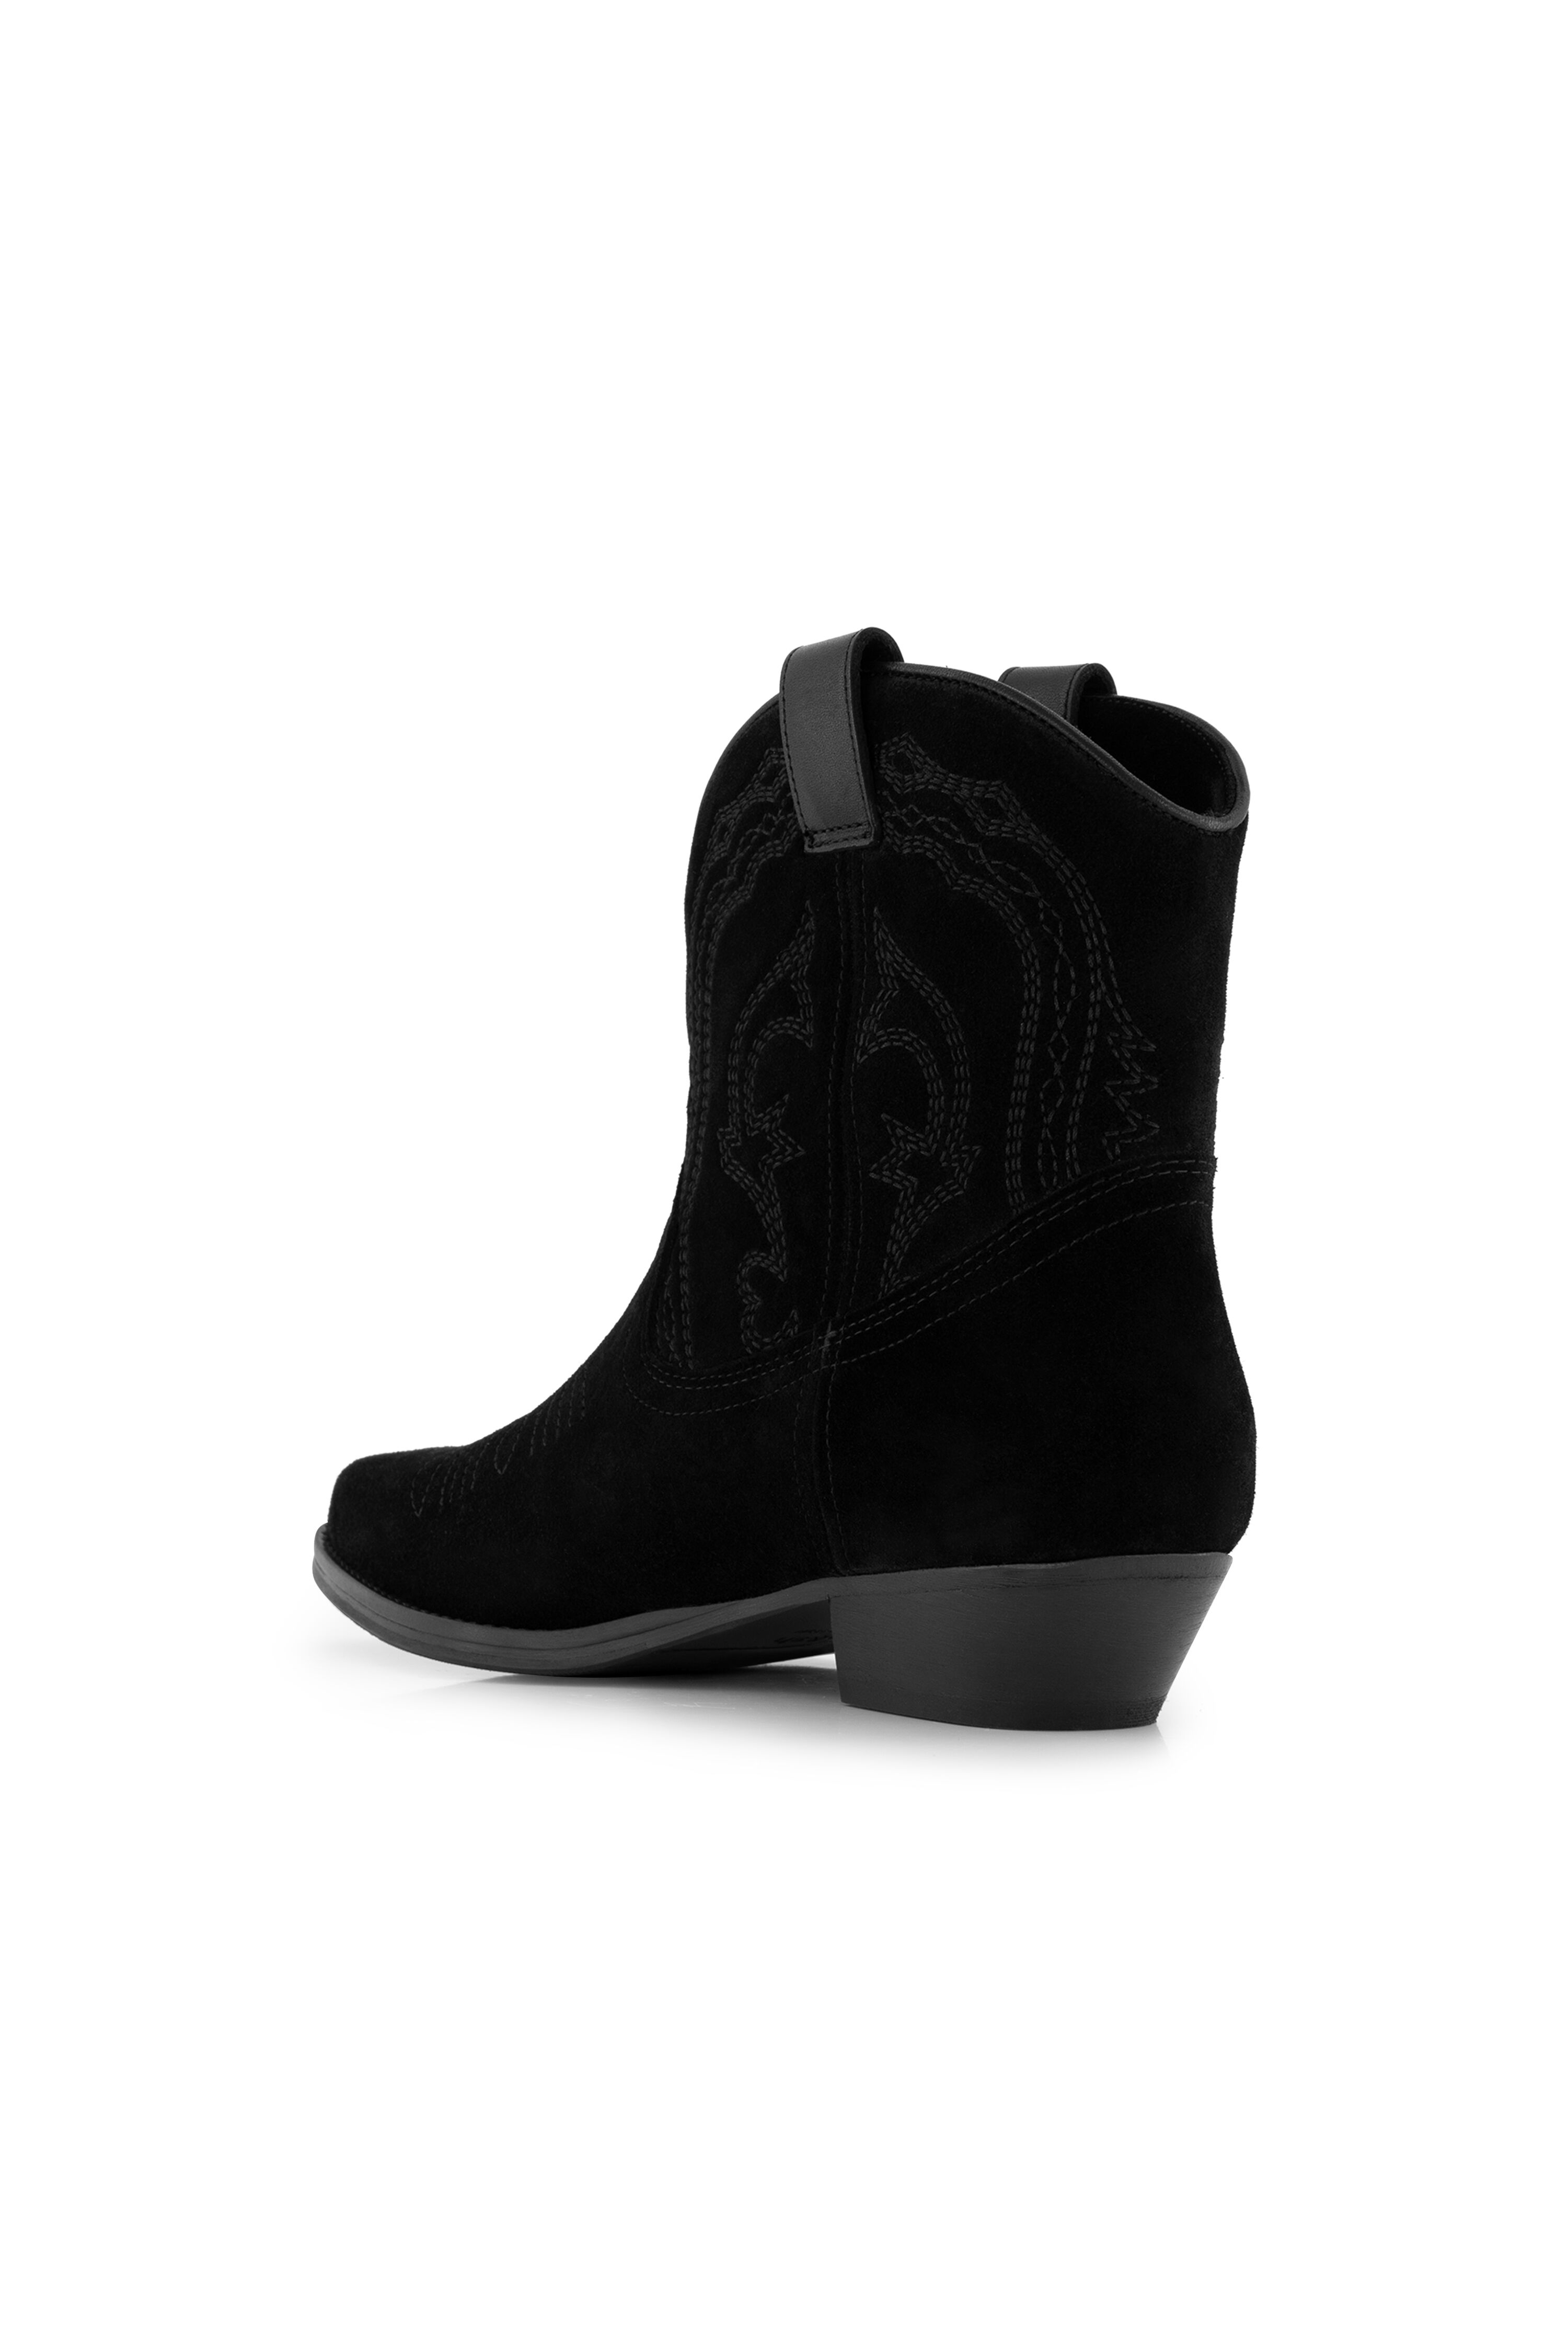 Bash Colt Boots Noir - 2H19COLT | Bloom Fashion